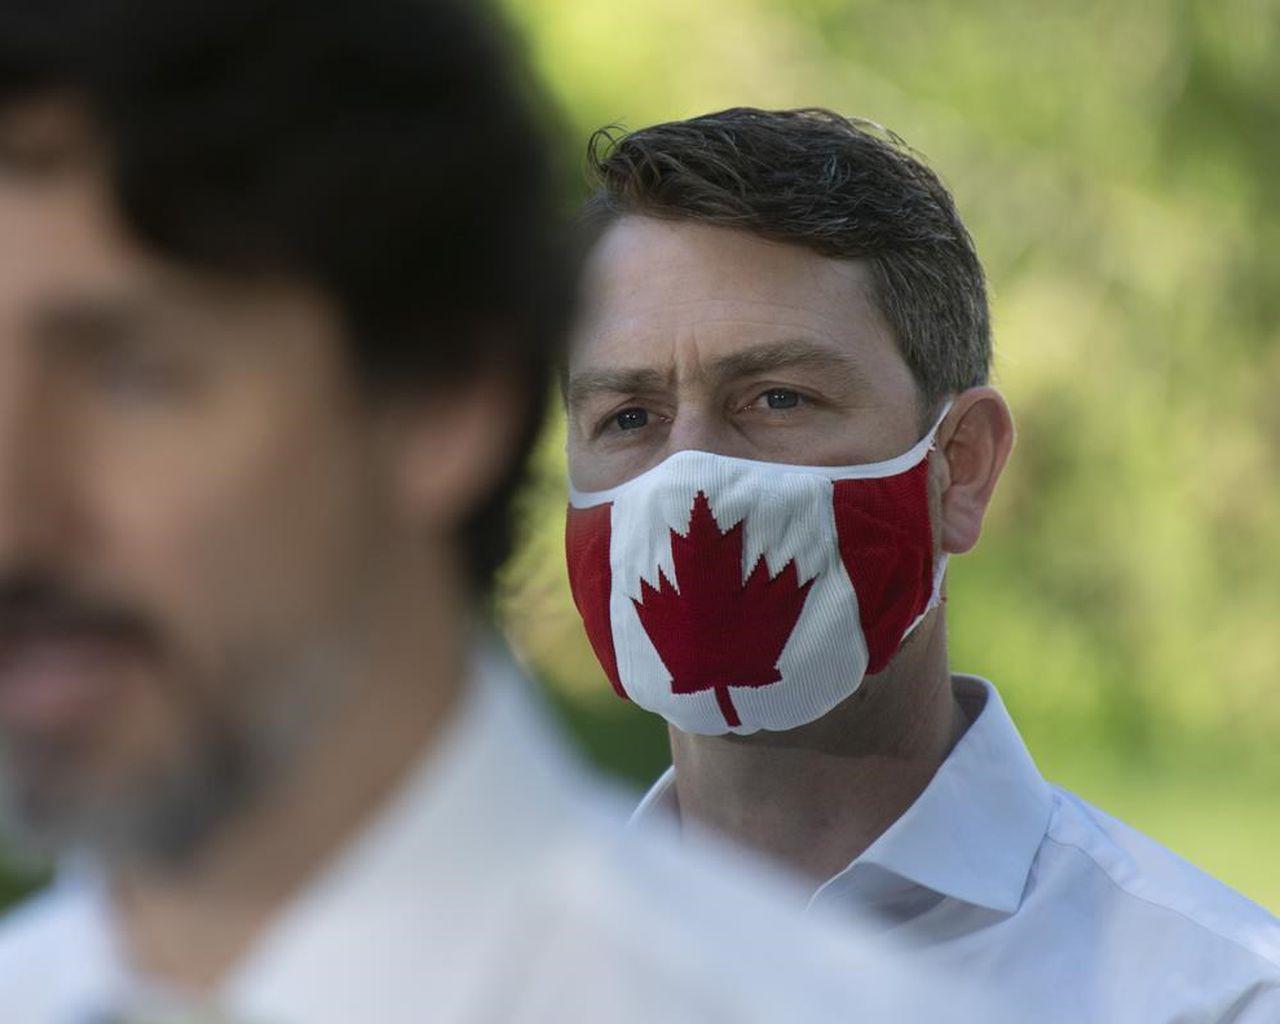 Καναδάς: Βουλευτής πιάστηκε να ουρεί σε τηλεδιάσκεψη του κοινοβουλίου!